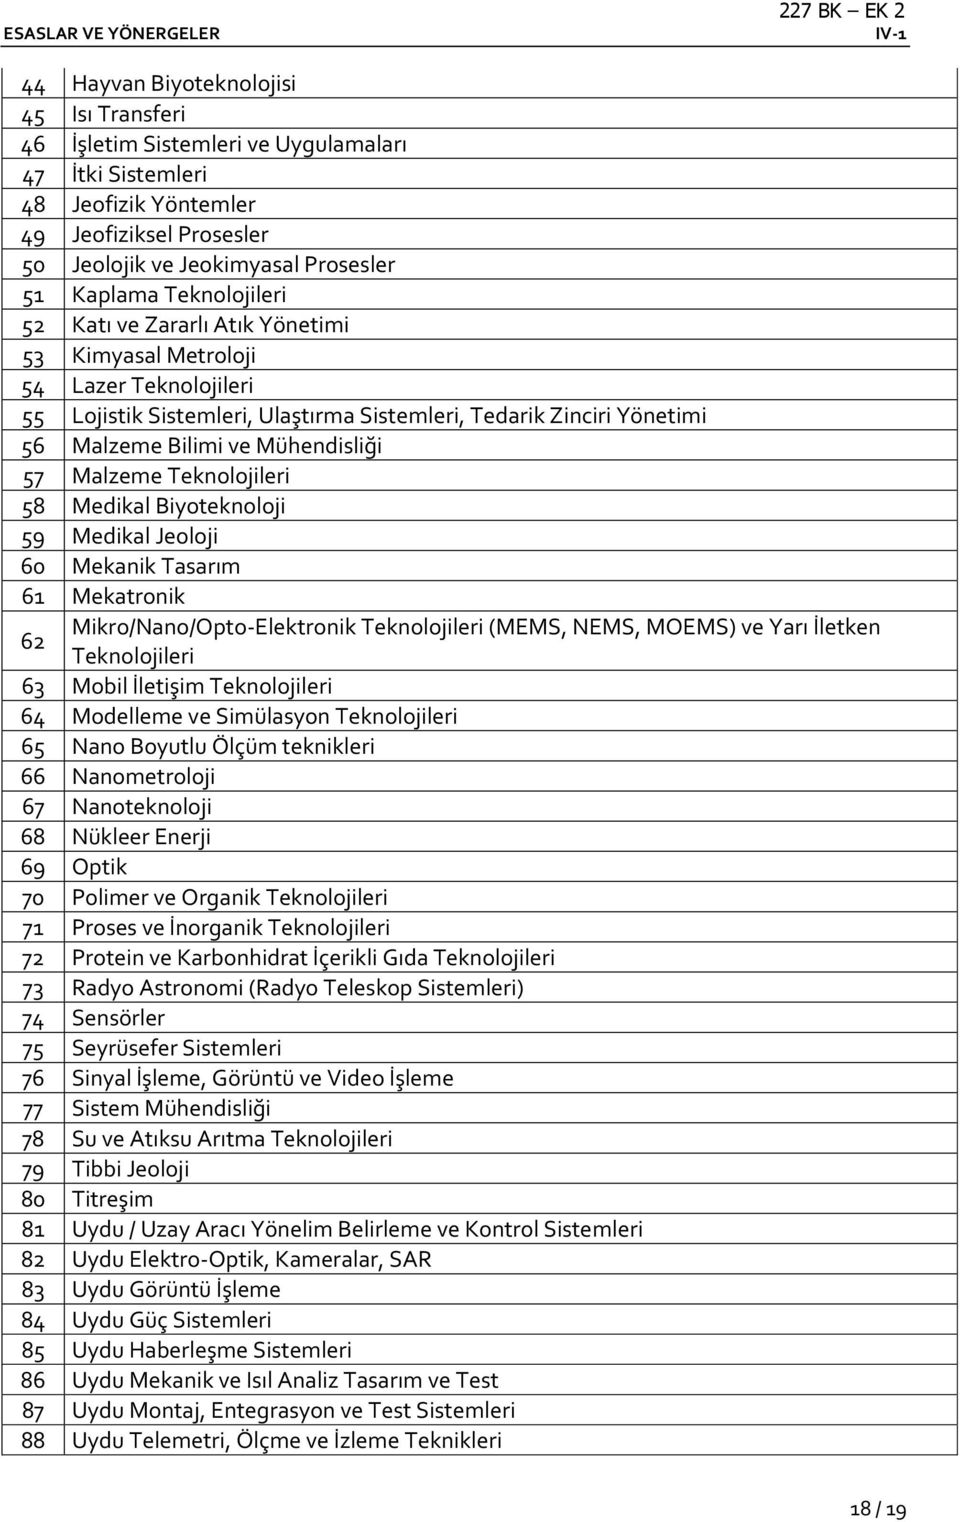 Malzeme Teknolojileri 58 Medikal Biyoteknoloji 59 Medikal Jeoloji 60 Mekanik Tasarım 61 Mekatronik 62 Mikro/Nano/Opto-Elektronik Teknolojileri (MEMS, NEMS, MOEMS) ve Yarı İletken Teknolojileri 63